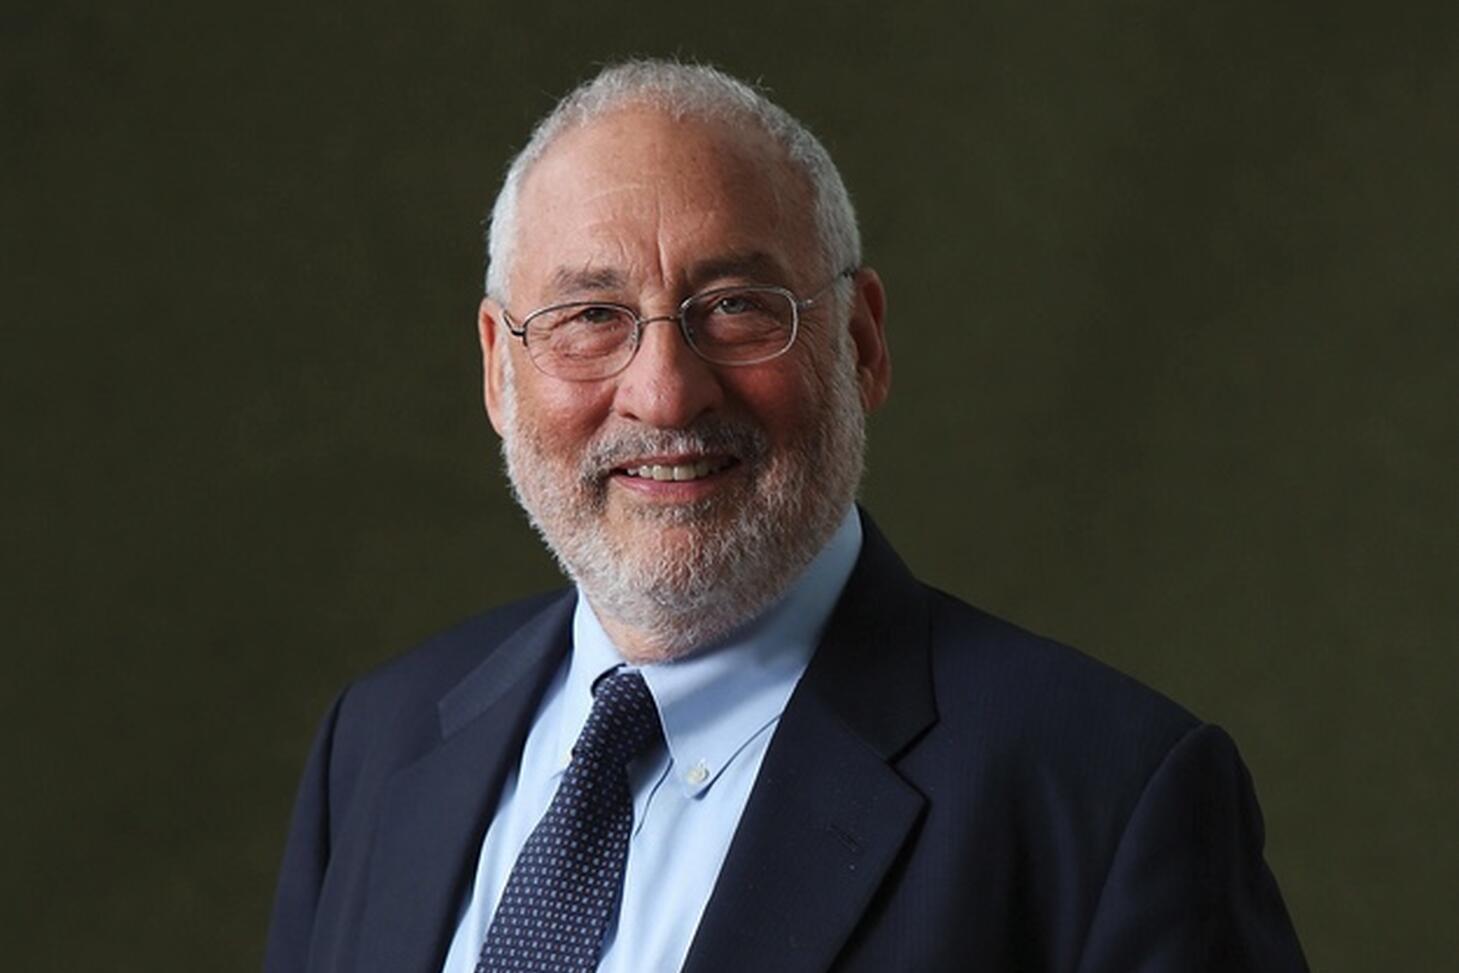 Photo Image of Joseph Stiglitz